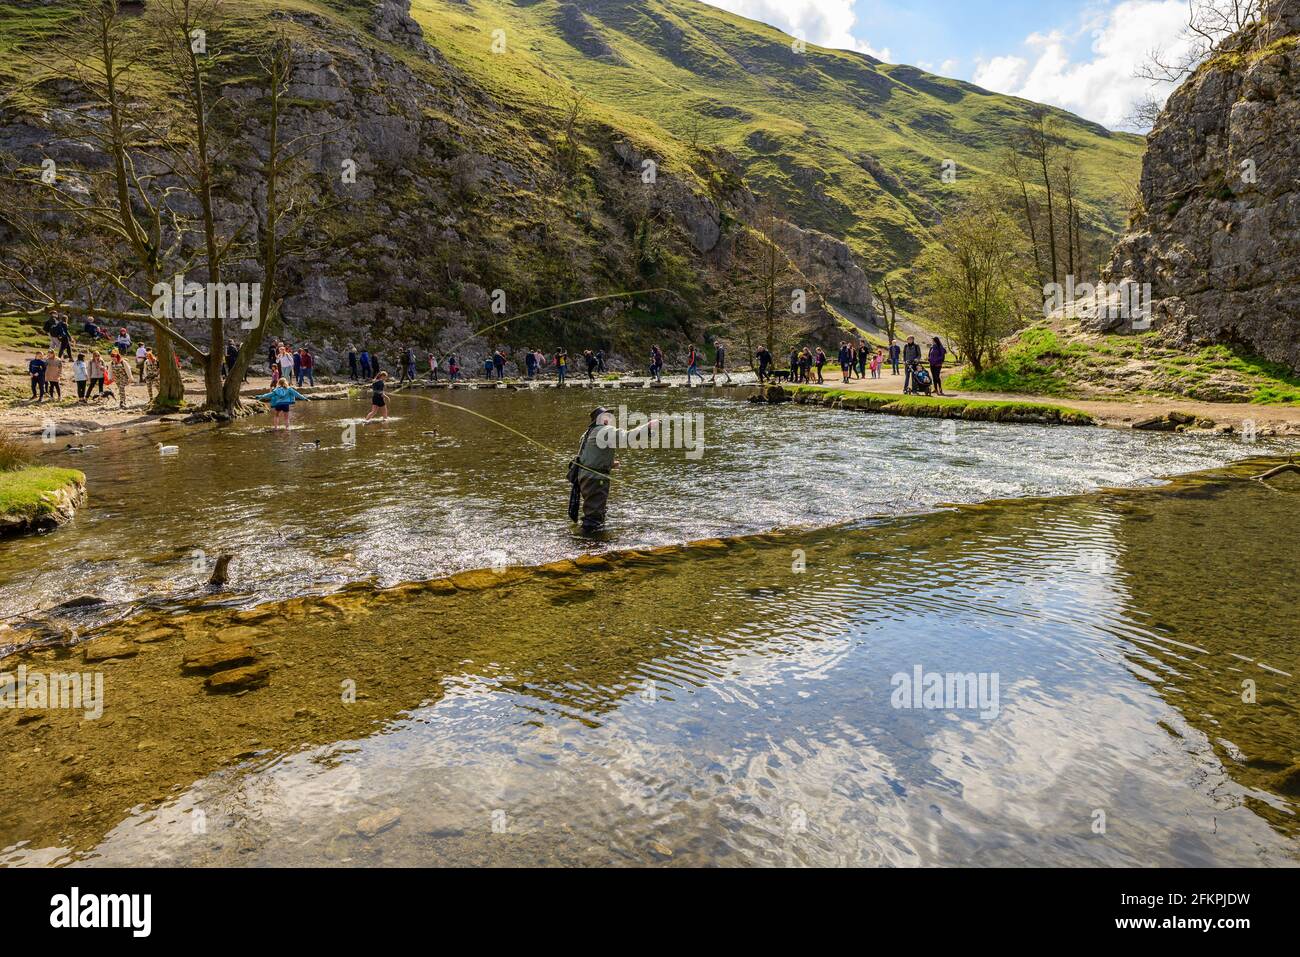 Dovedale Stepping Stones, Peak District, Derbyshire, Royaume-Uni. Personnes traversant la rivière. Pêcheur dans la rivière pêche. Banque D'Images